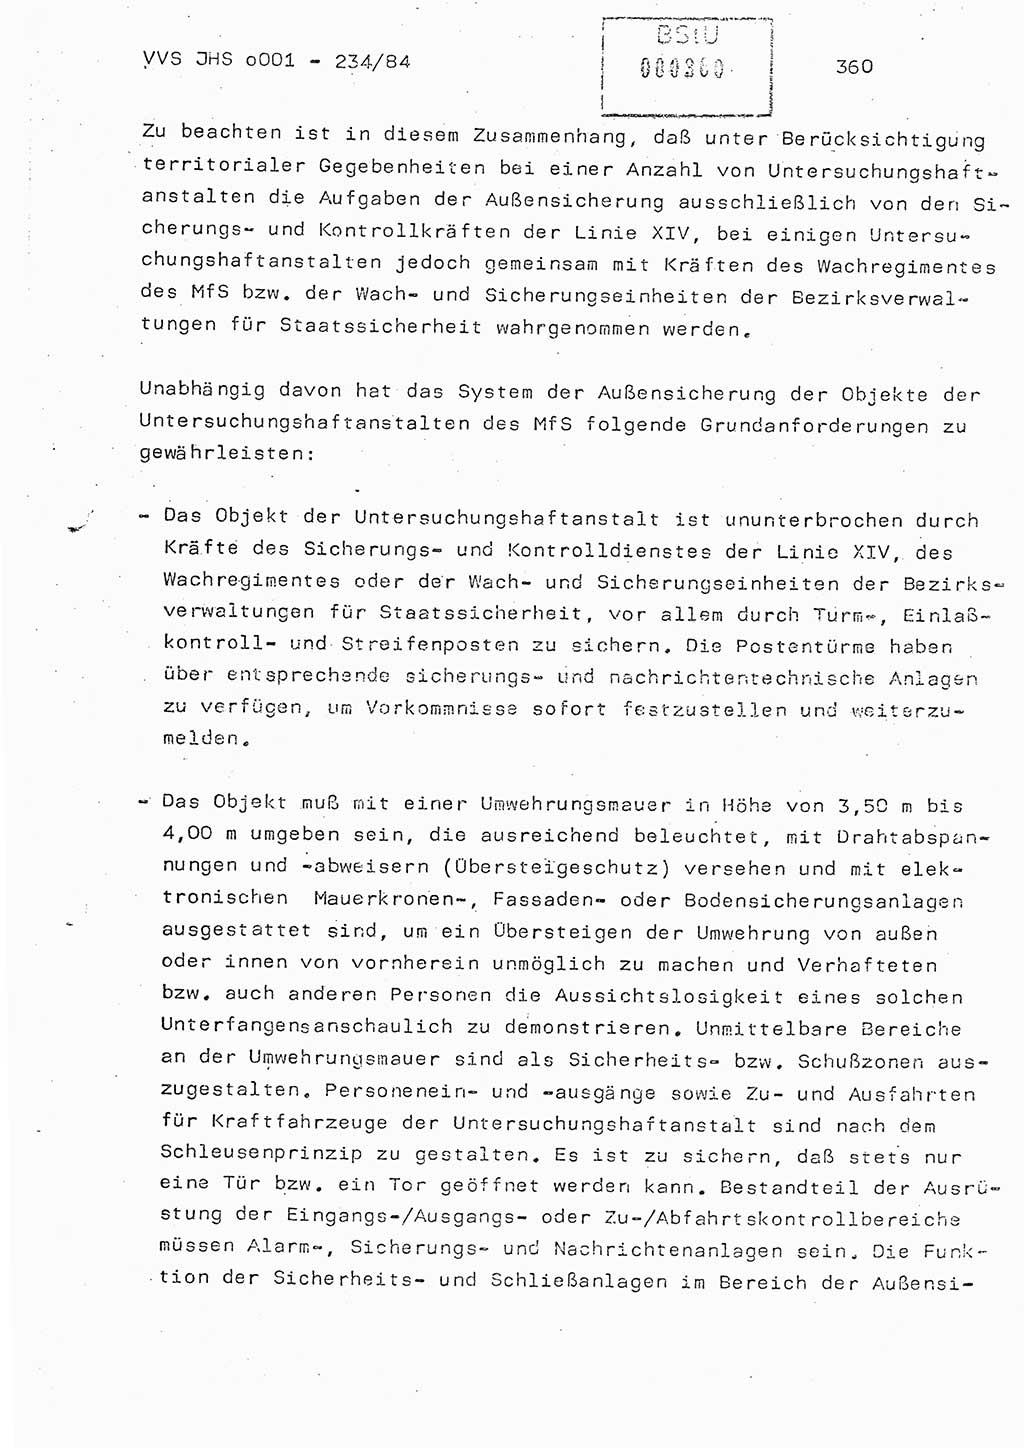 Dissertation Oberst Siegfried Rataizick (Abt. ⅩⅣ), Oberstleutnant Volkmar Heinz (Abt. ⅩⅣ), Oberstleutnant Werner Stein (HA Ⅸ), Hauptmann Heinz Conrad (JHS), Ministerium für Staatssicherheit (MfS) [Deutsche Demokratische Republik (DDR)], Juristische Hochschule (JHS), Vertrauliche Verschlußsache (VVS) o001-234/84, Potsdam 1984, Seite 360 (Diss. MfS DDR JHS VVS o001-234/84 1984, S. 360)